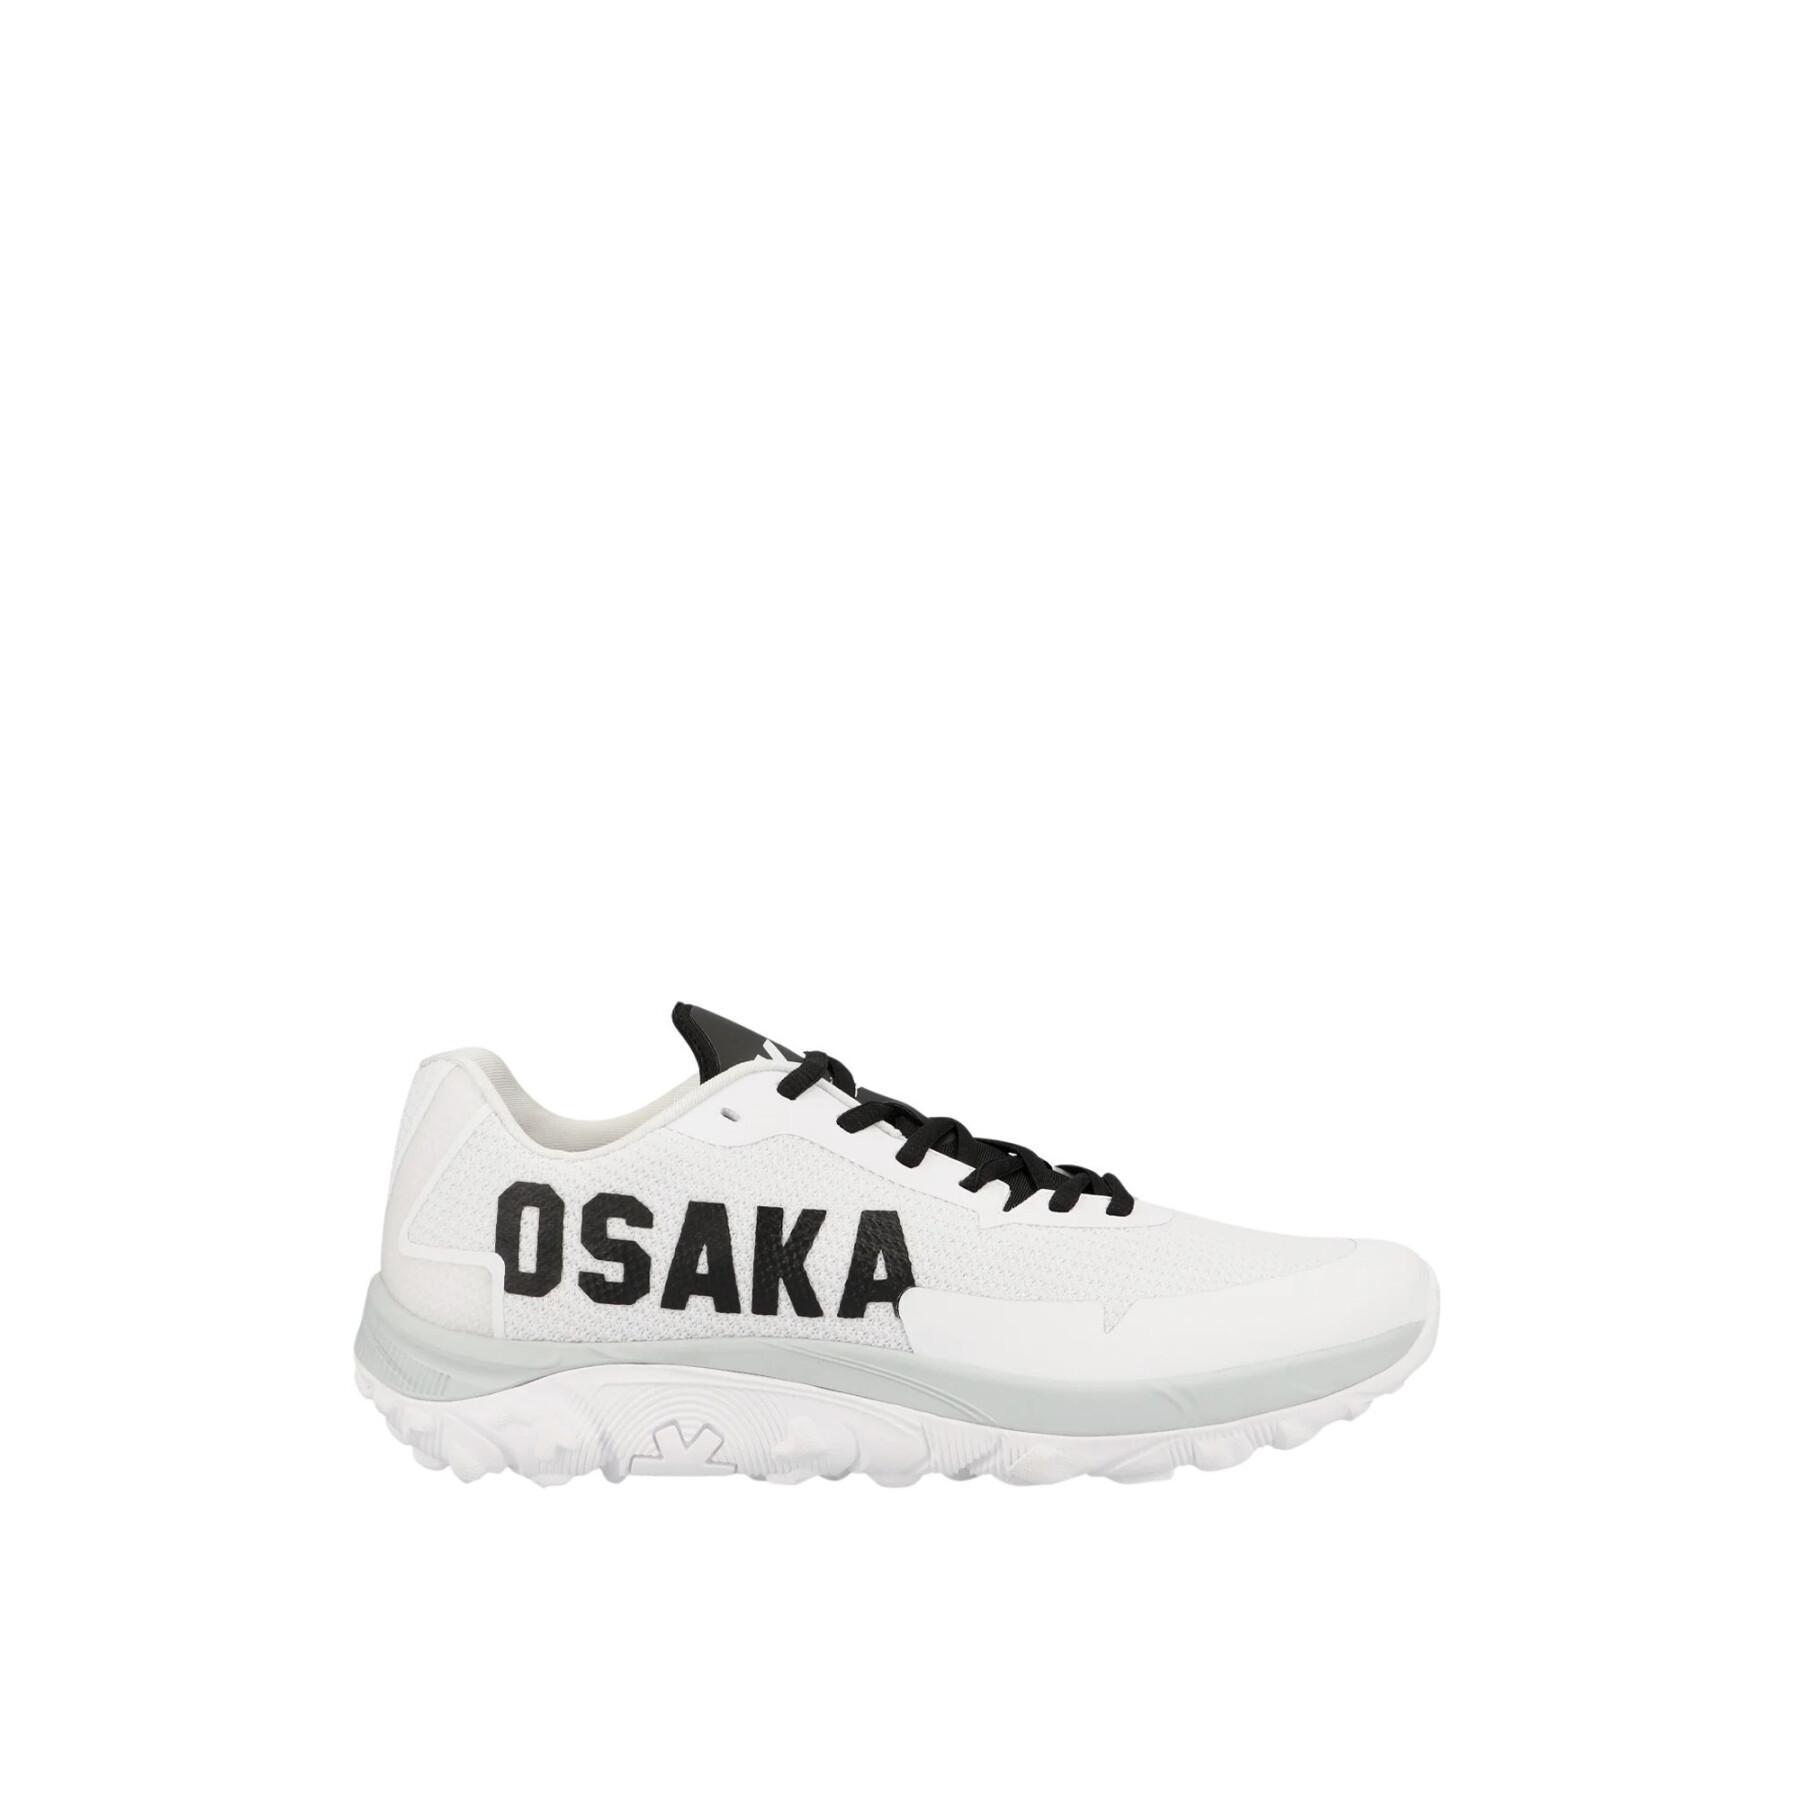 Schuhe Osaka Kai MK1